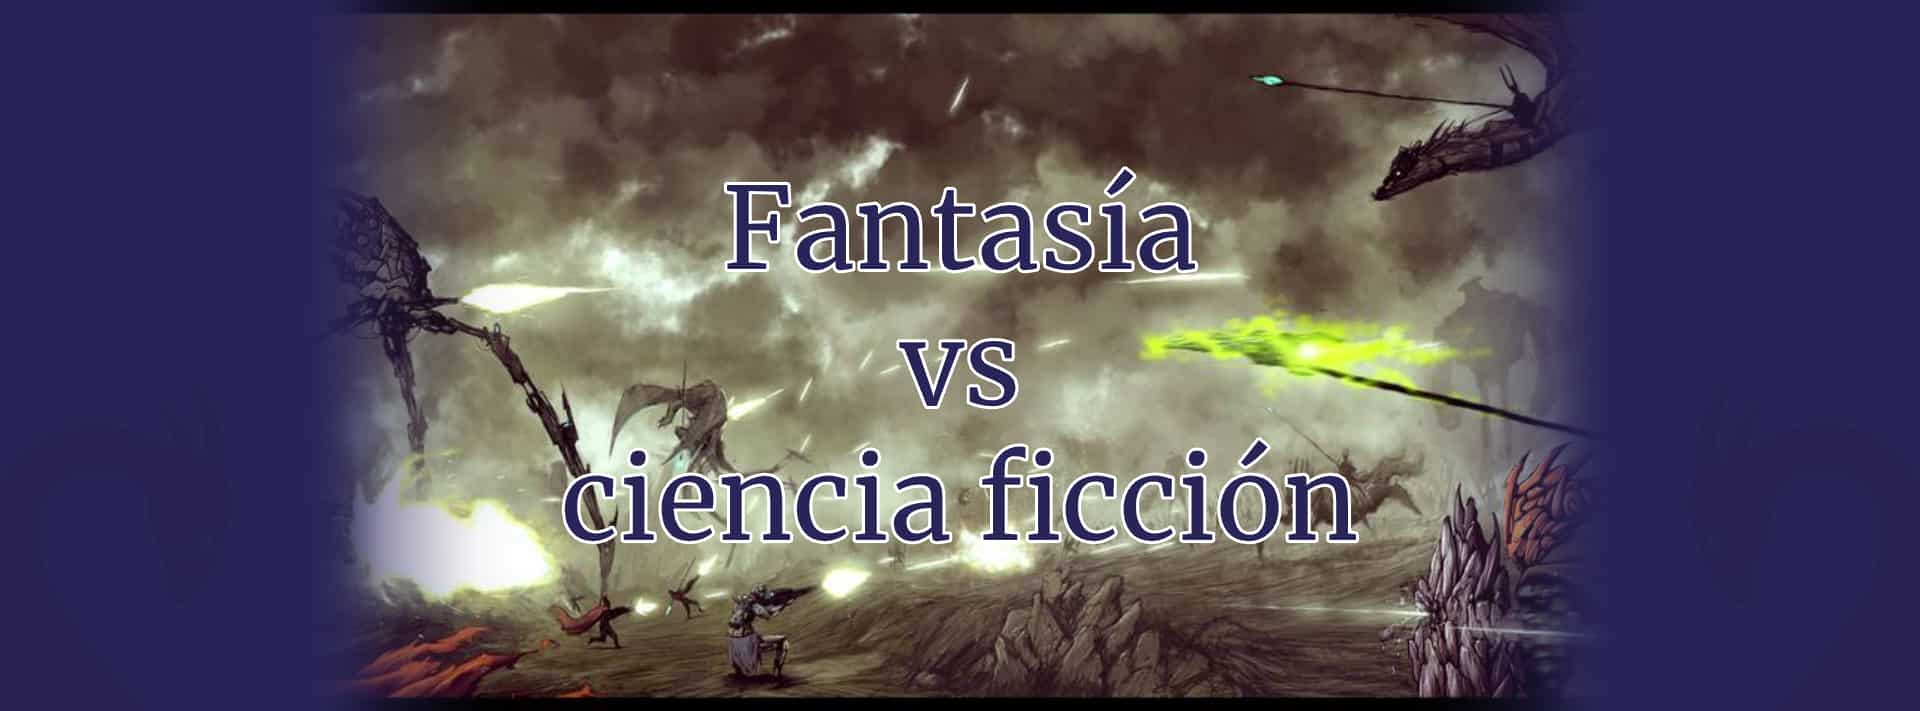 Portada fantasía vs ciencia ficción